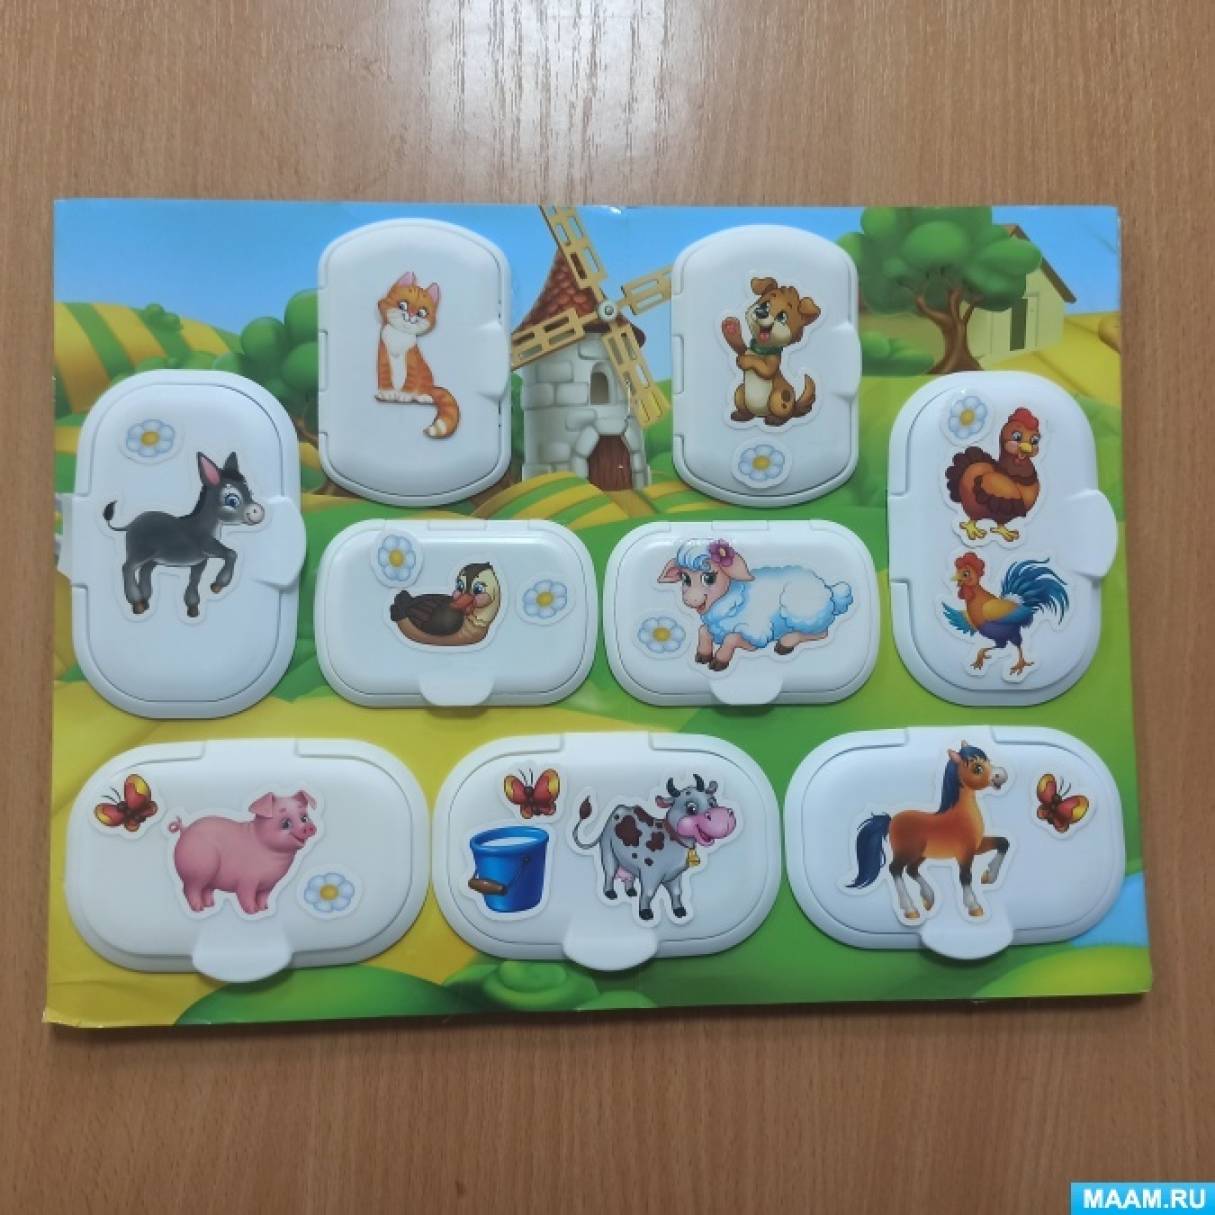 Картотека дидактических игр по математике для детей дошкольного возраста